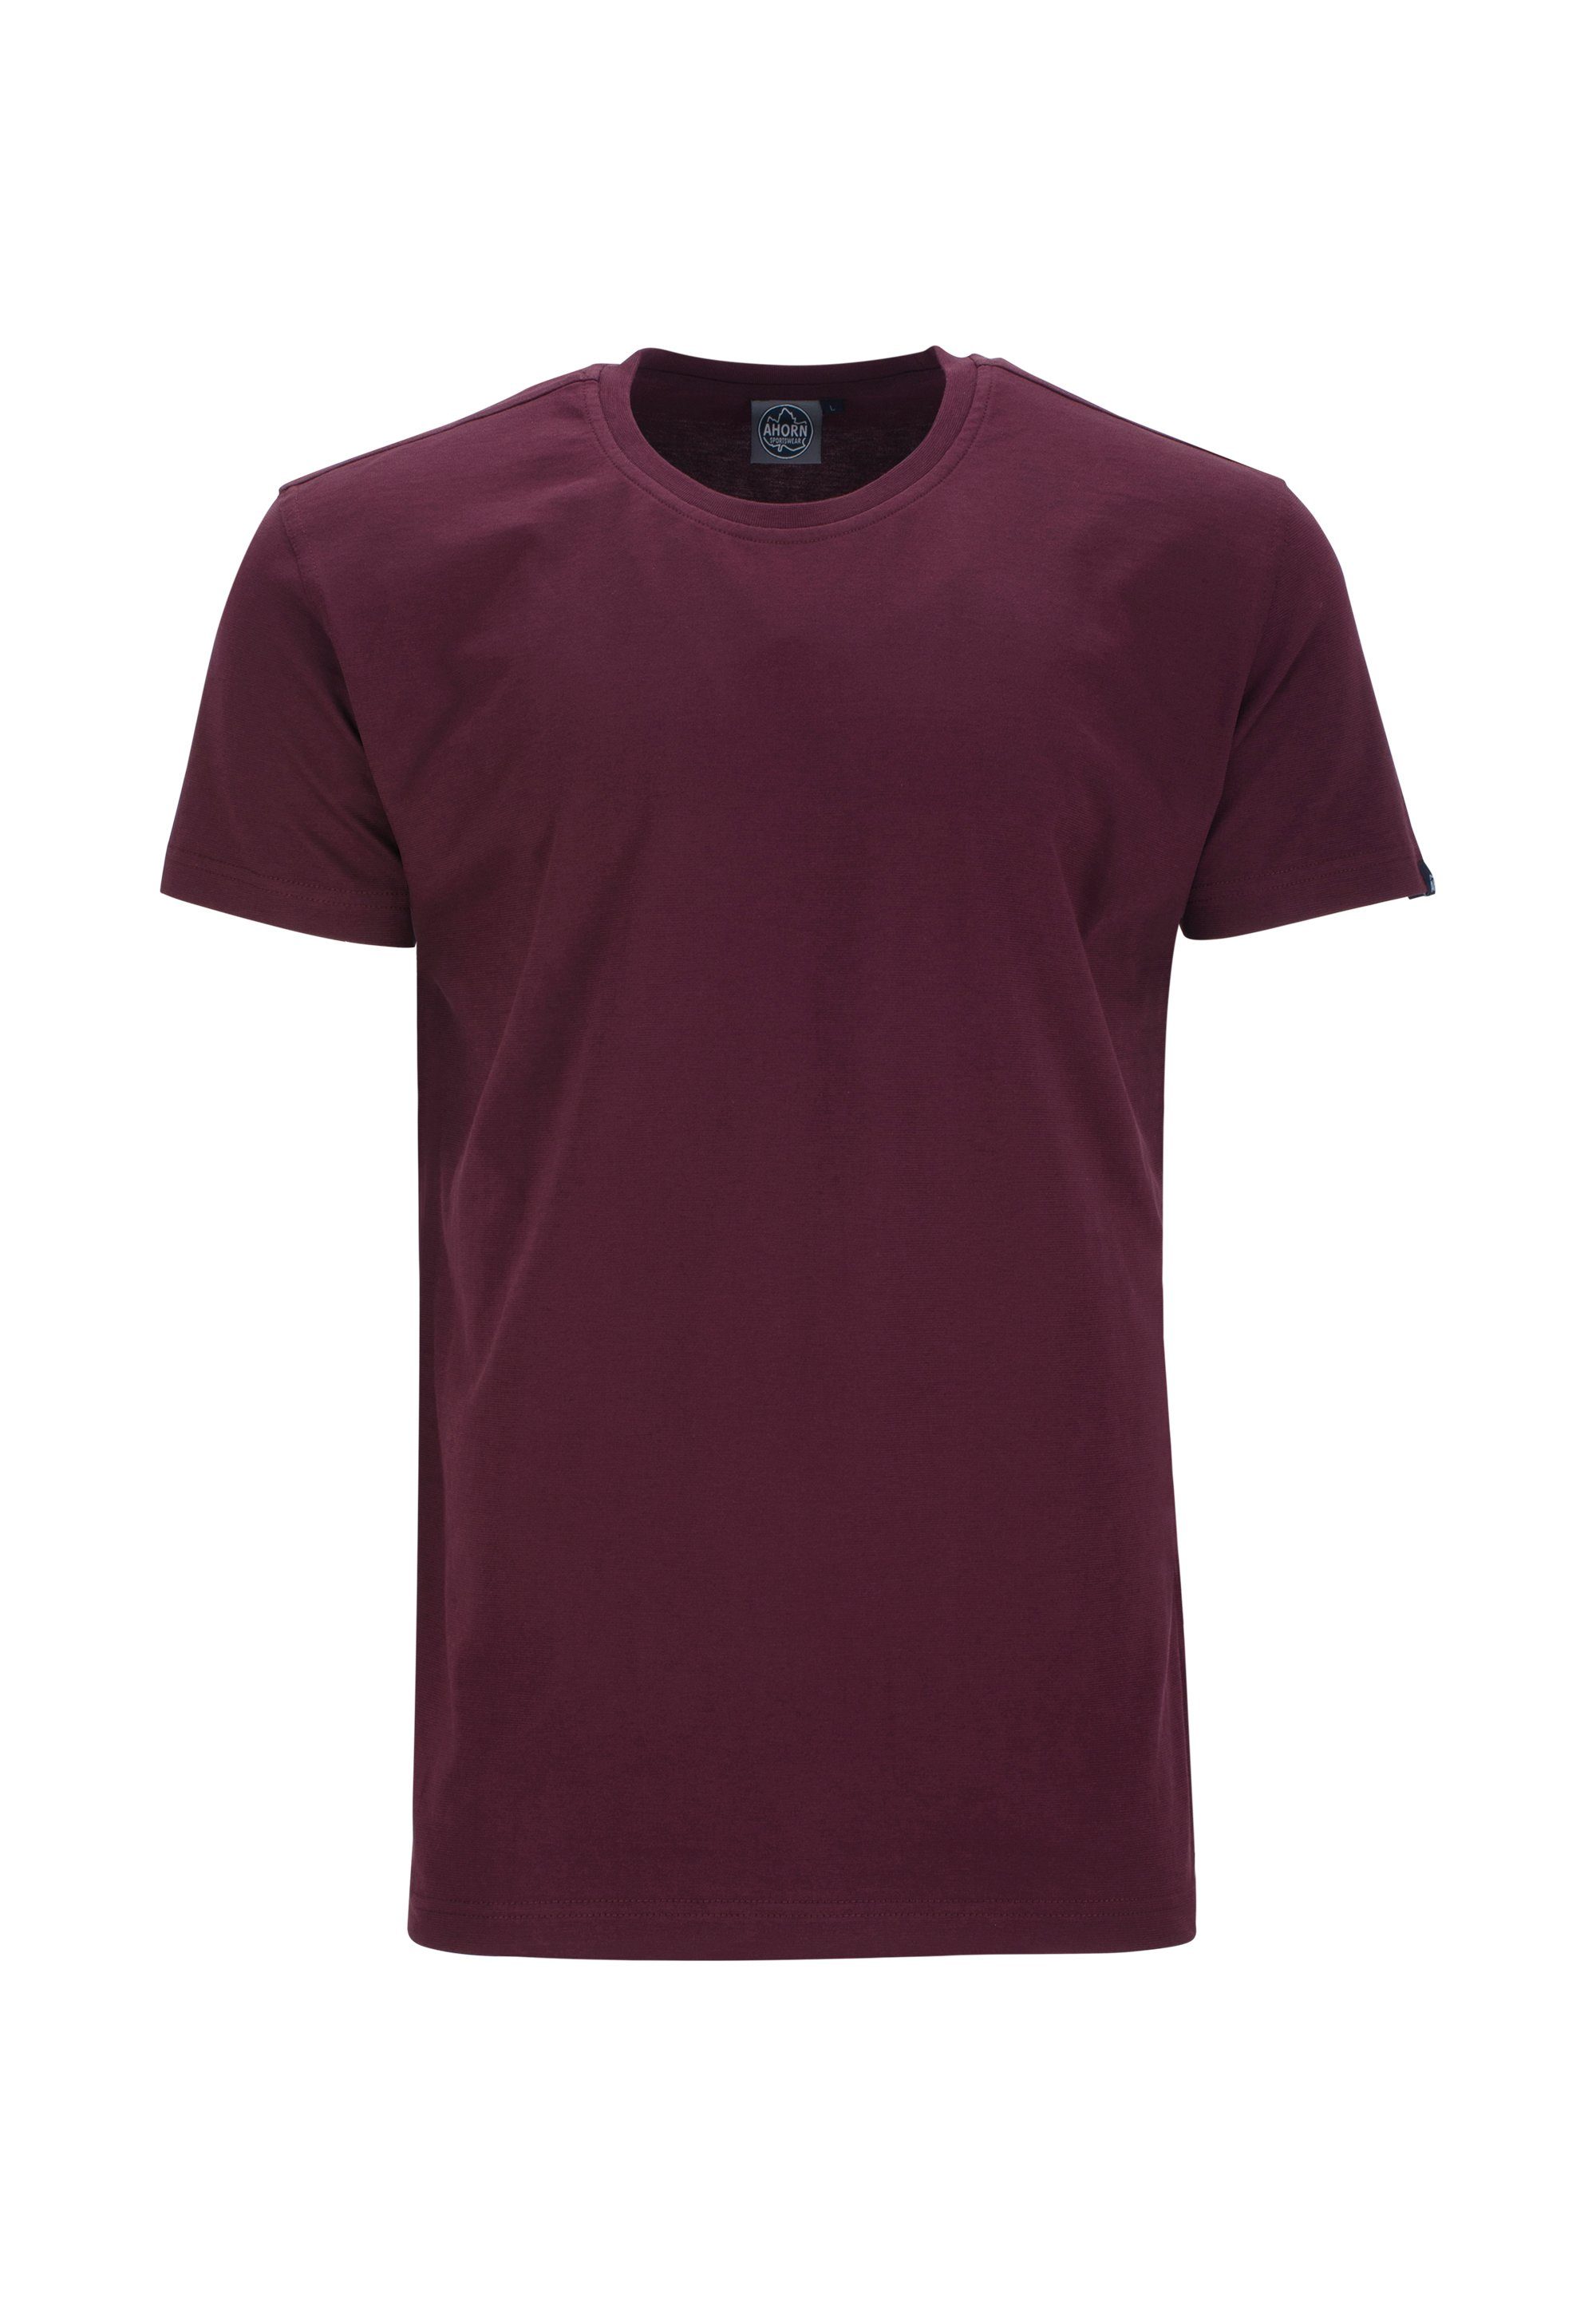 AHORN SPORTSWEAR im Basic-Look T-Shirt klassischen rot